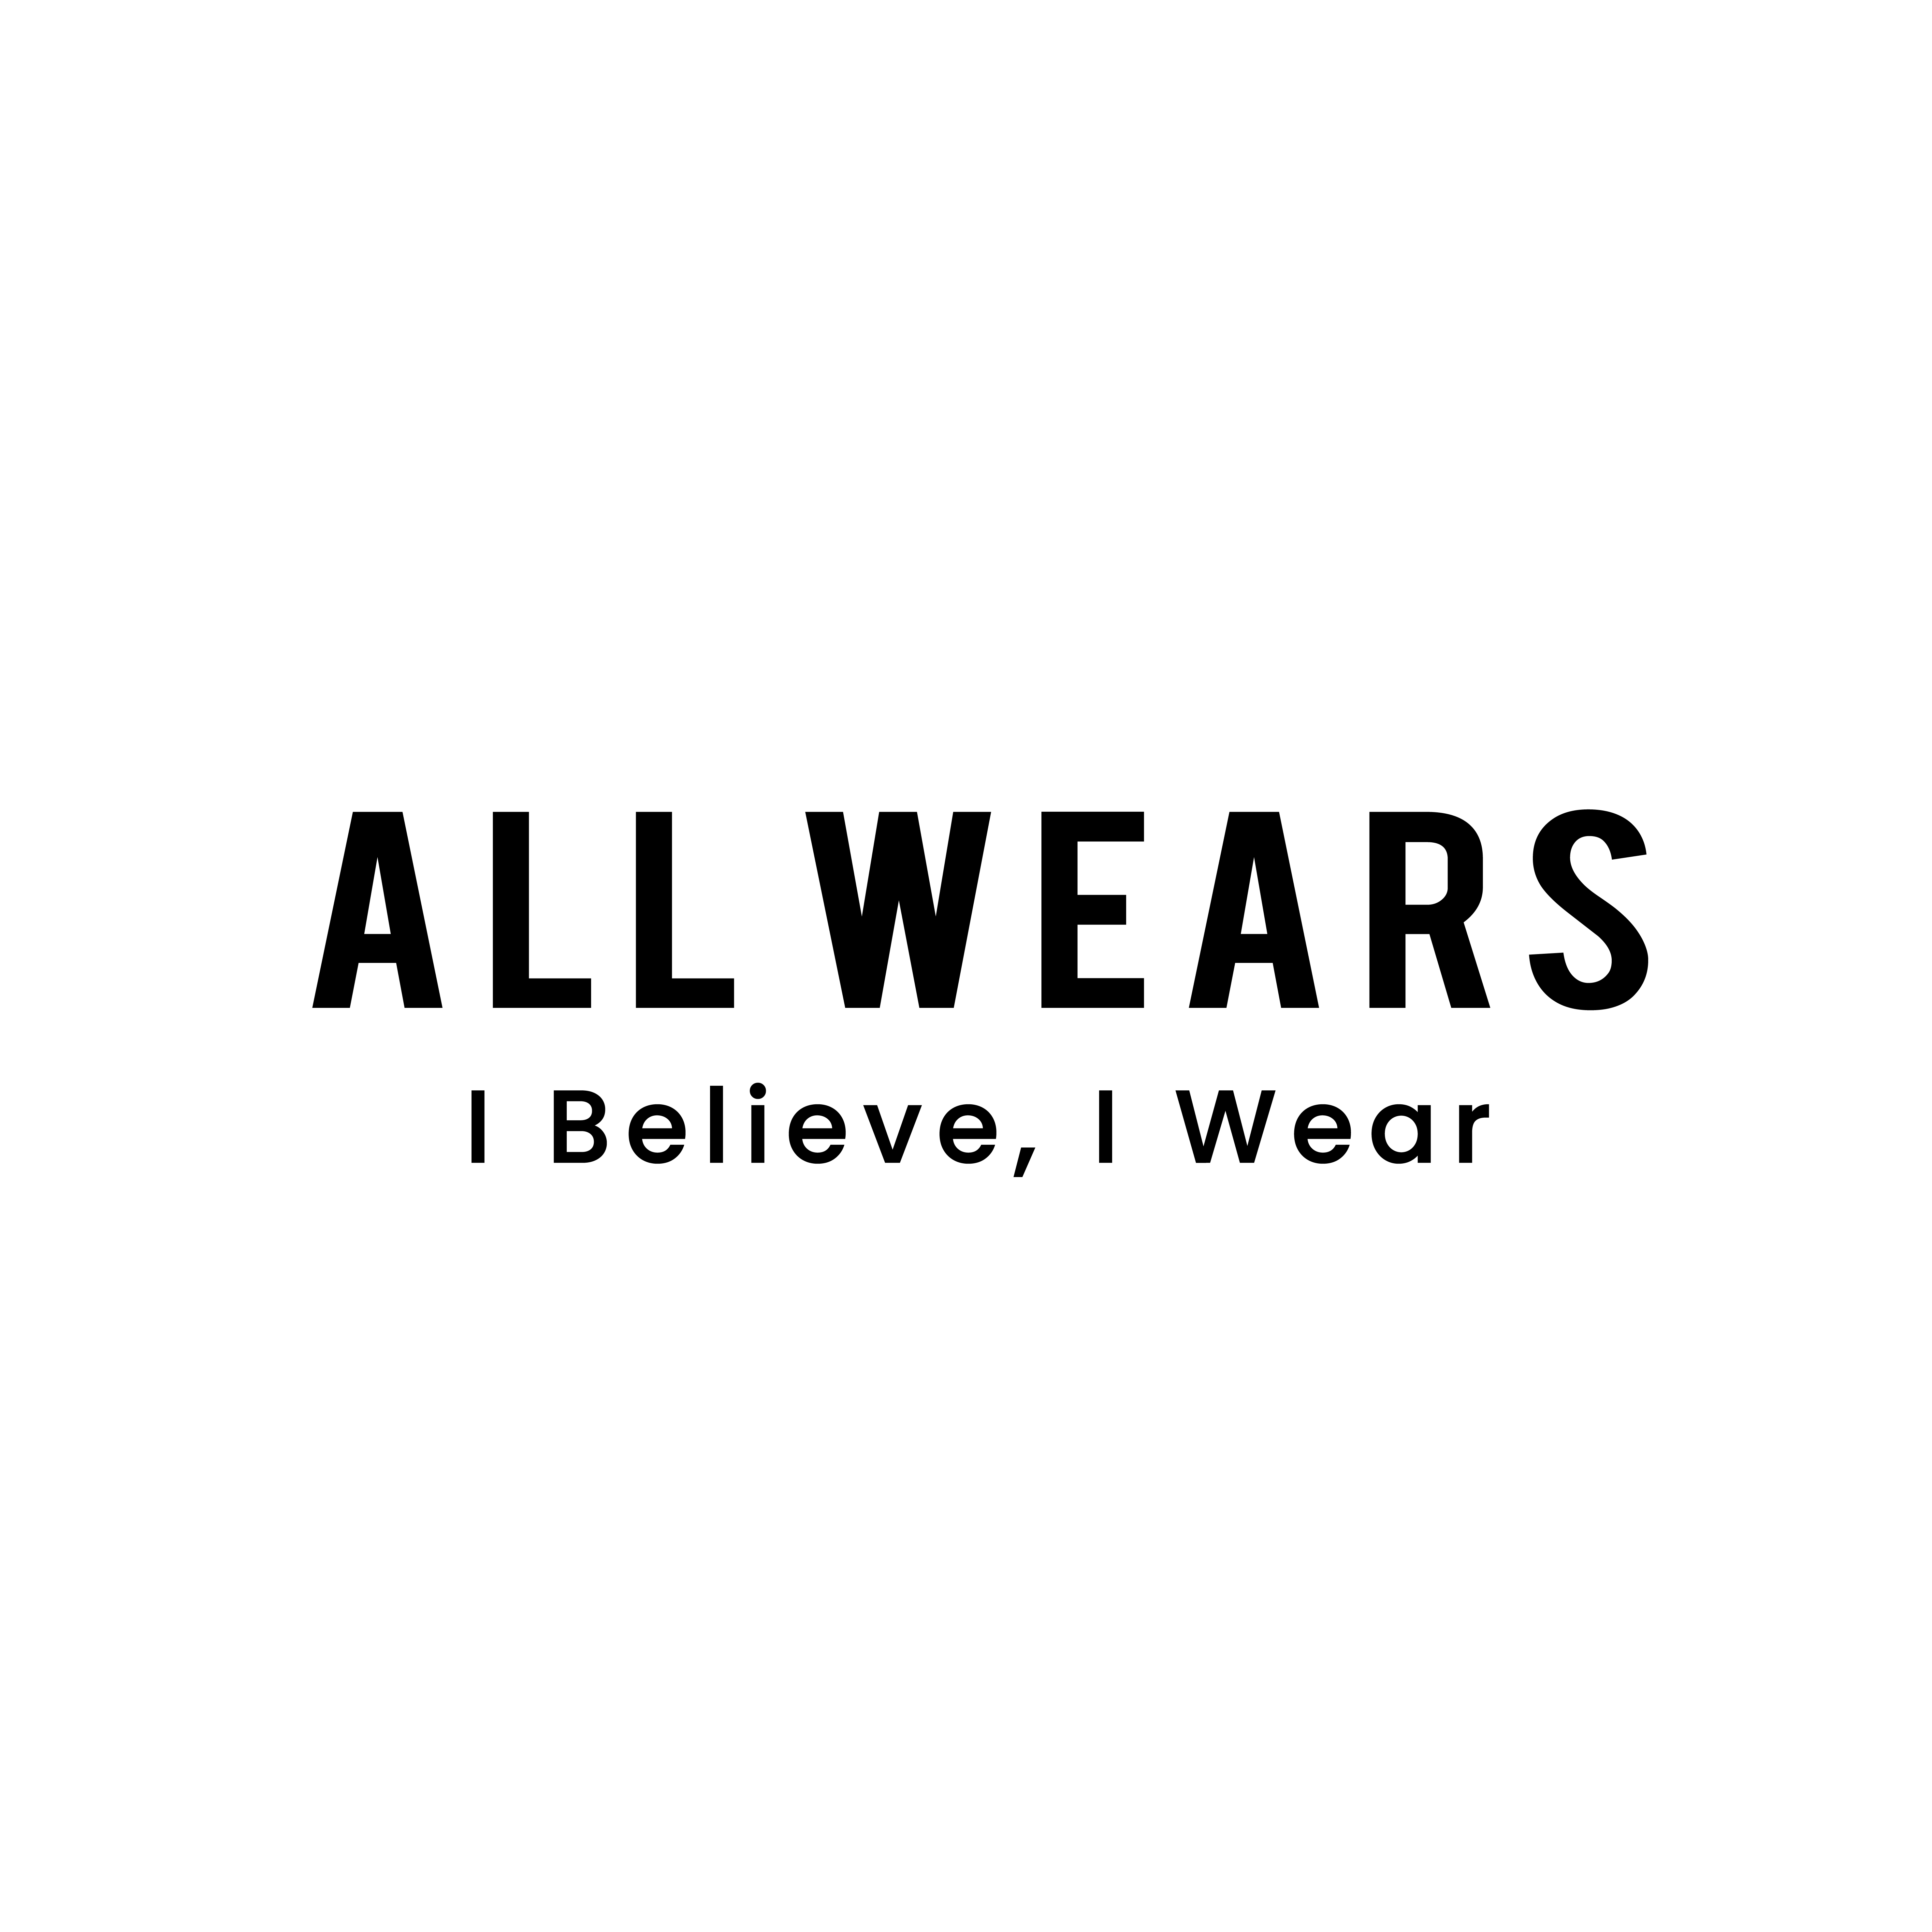 All Wears